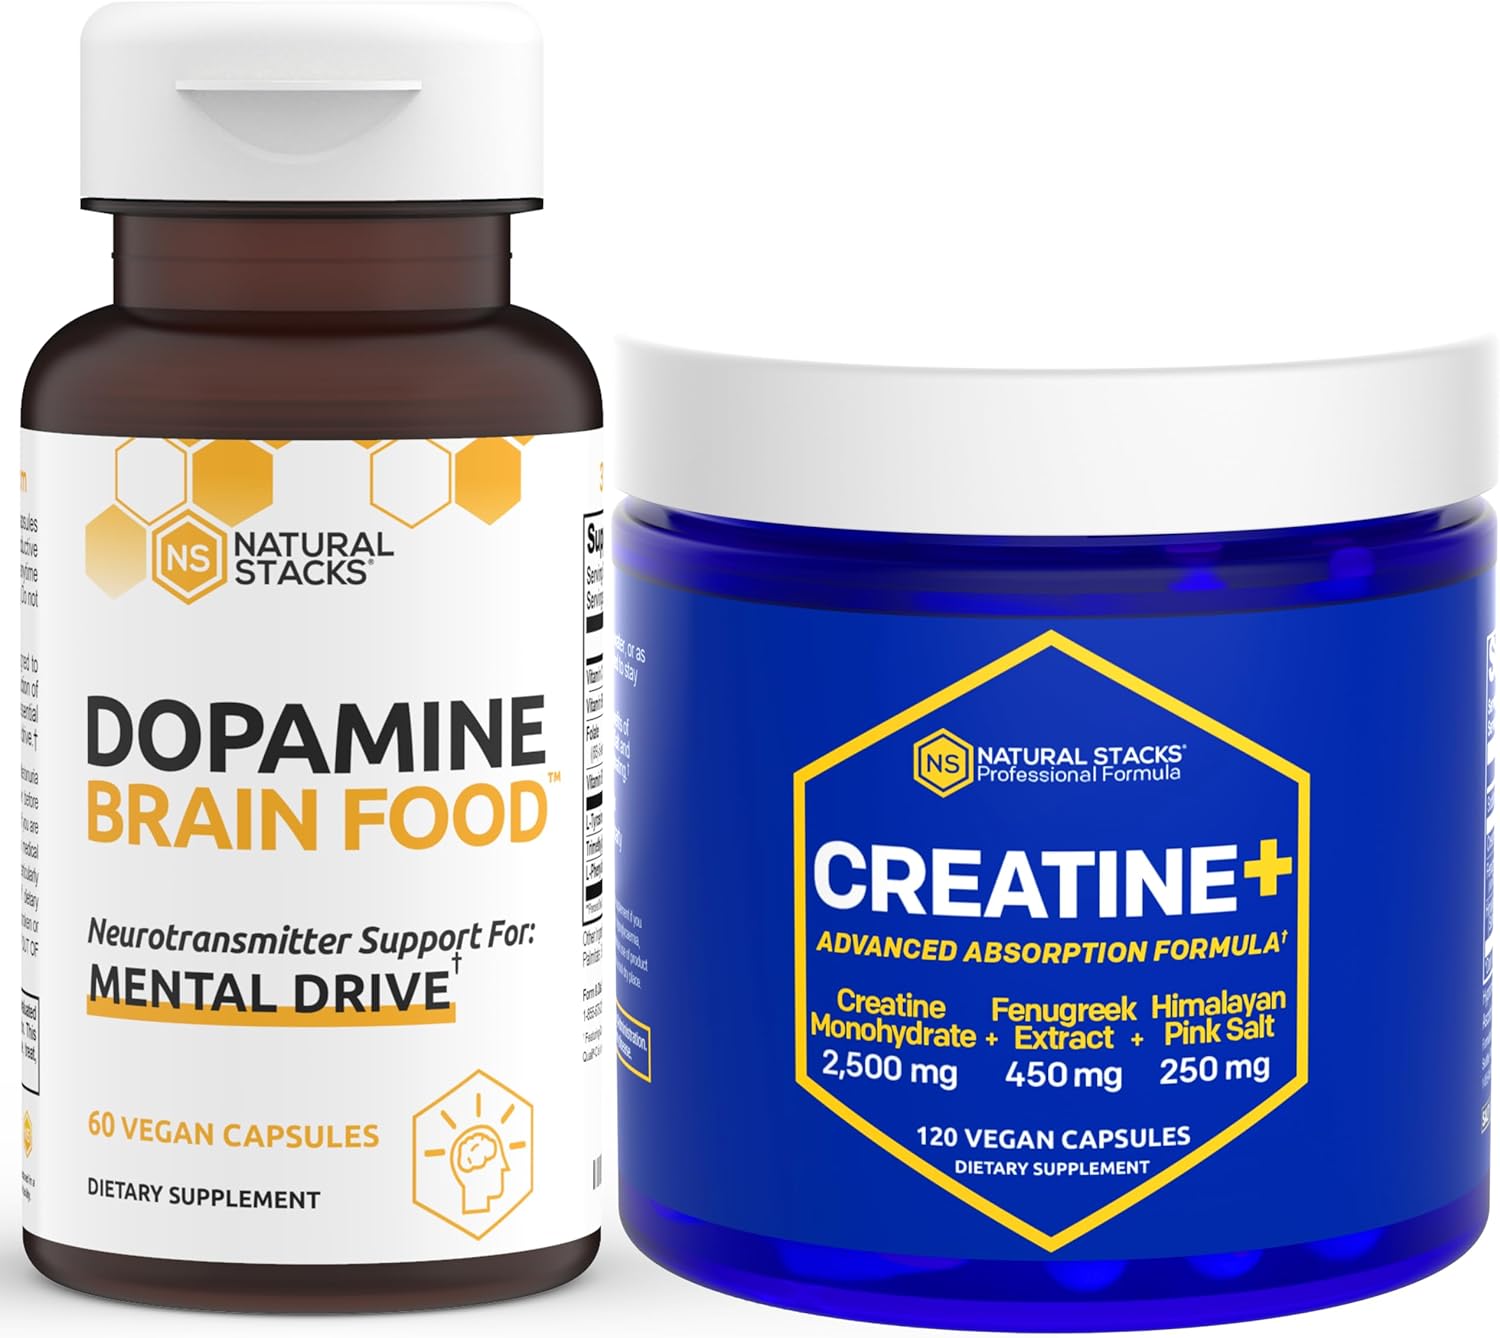 NATURAL STACKS Dopamine Brain Food & Creatine Monoh